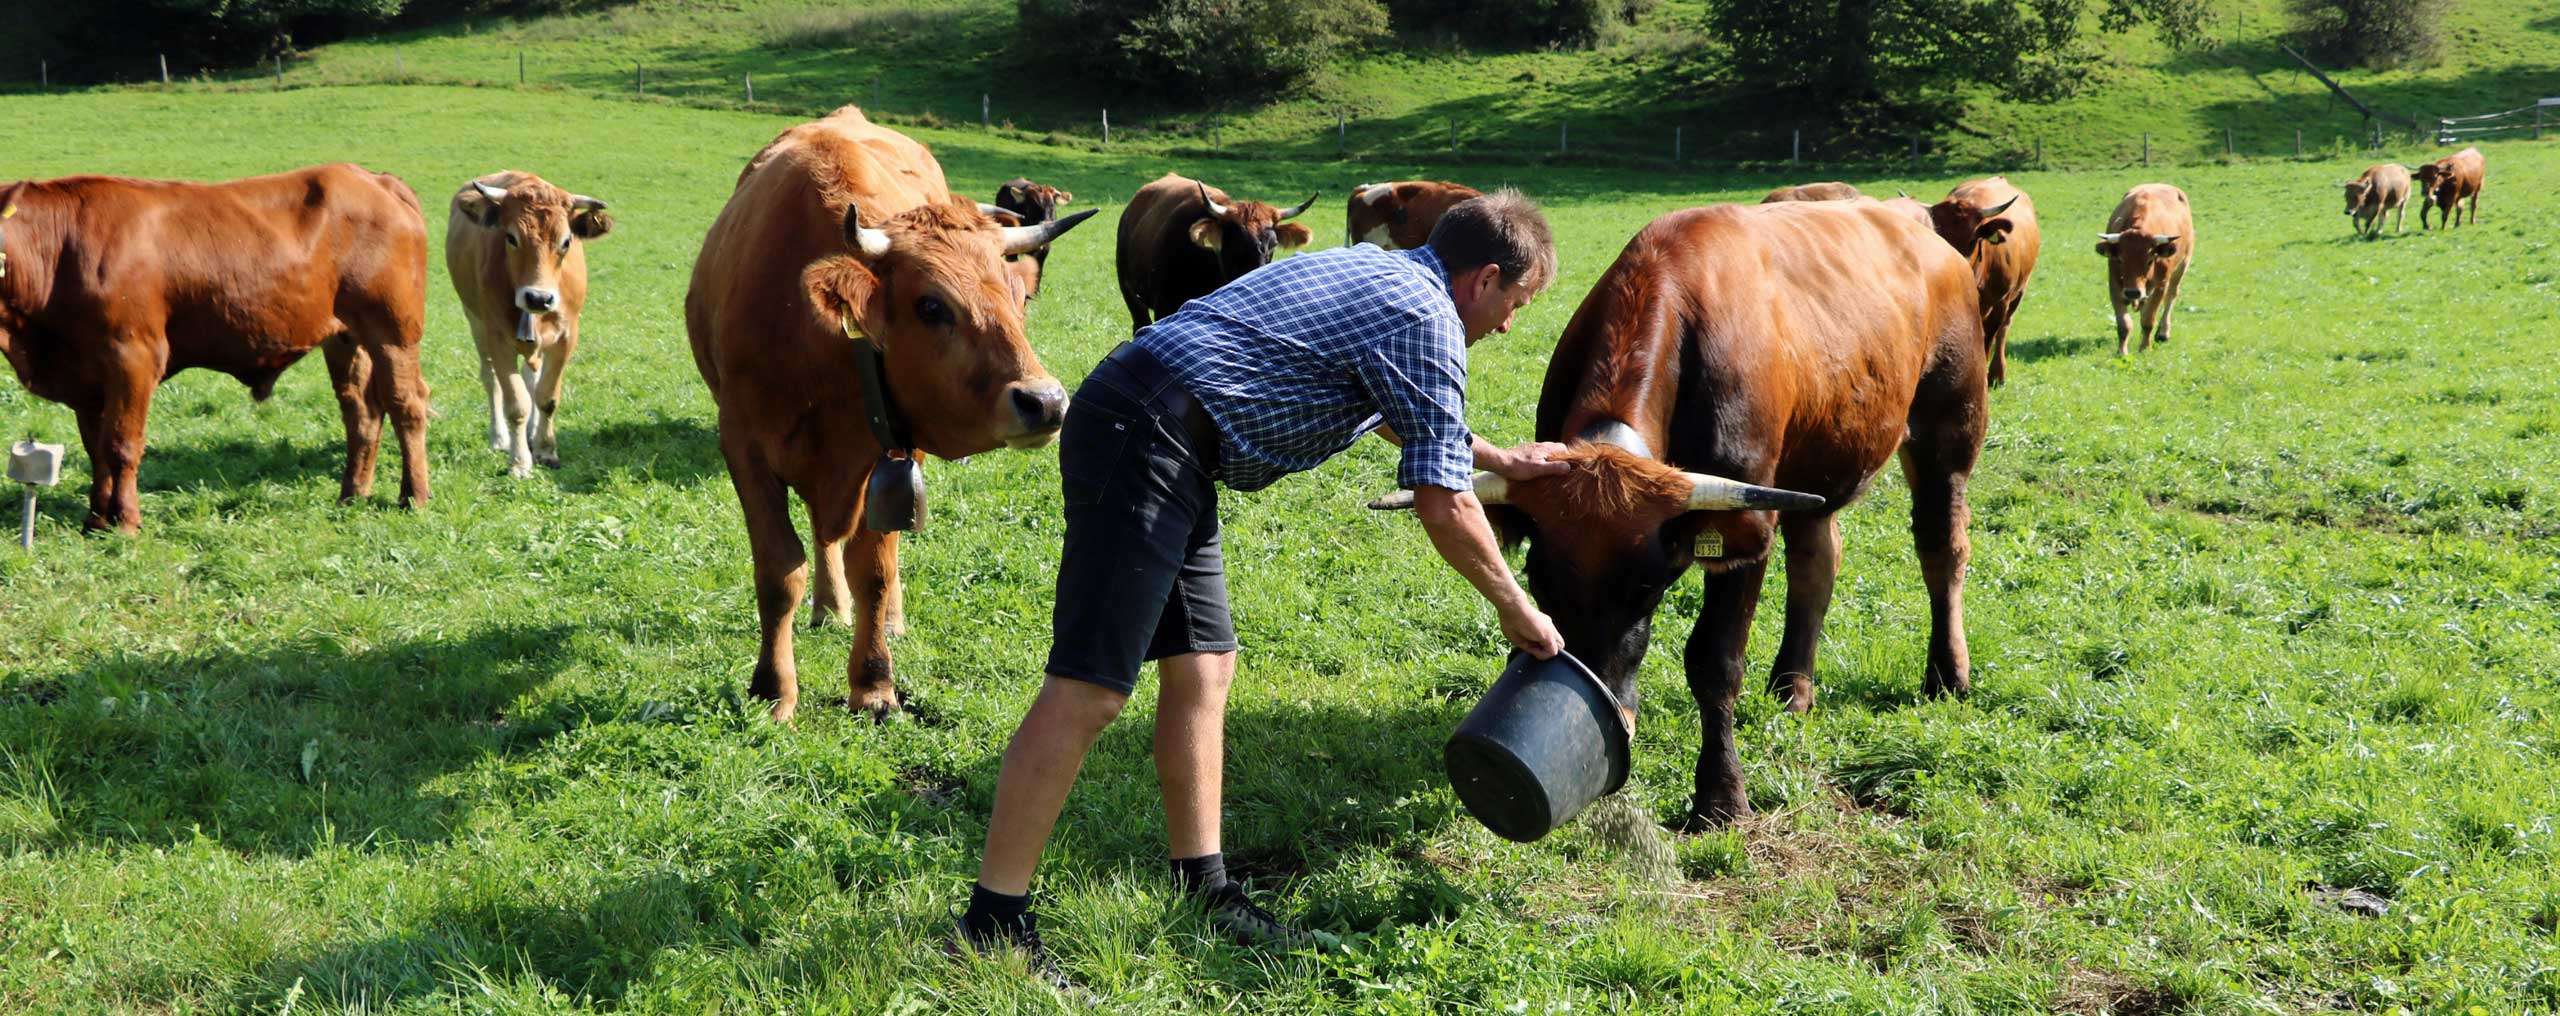 Naturland Bauer beim Füttern seiner Kühe auf dem Grünland